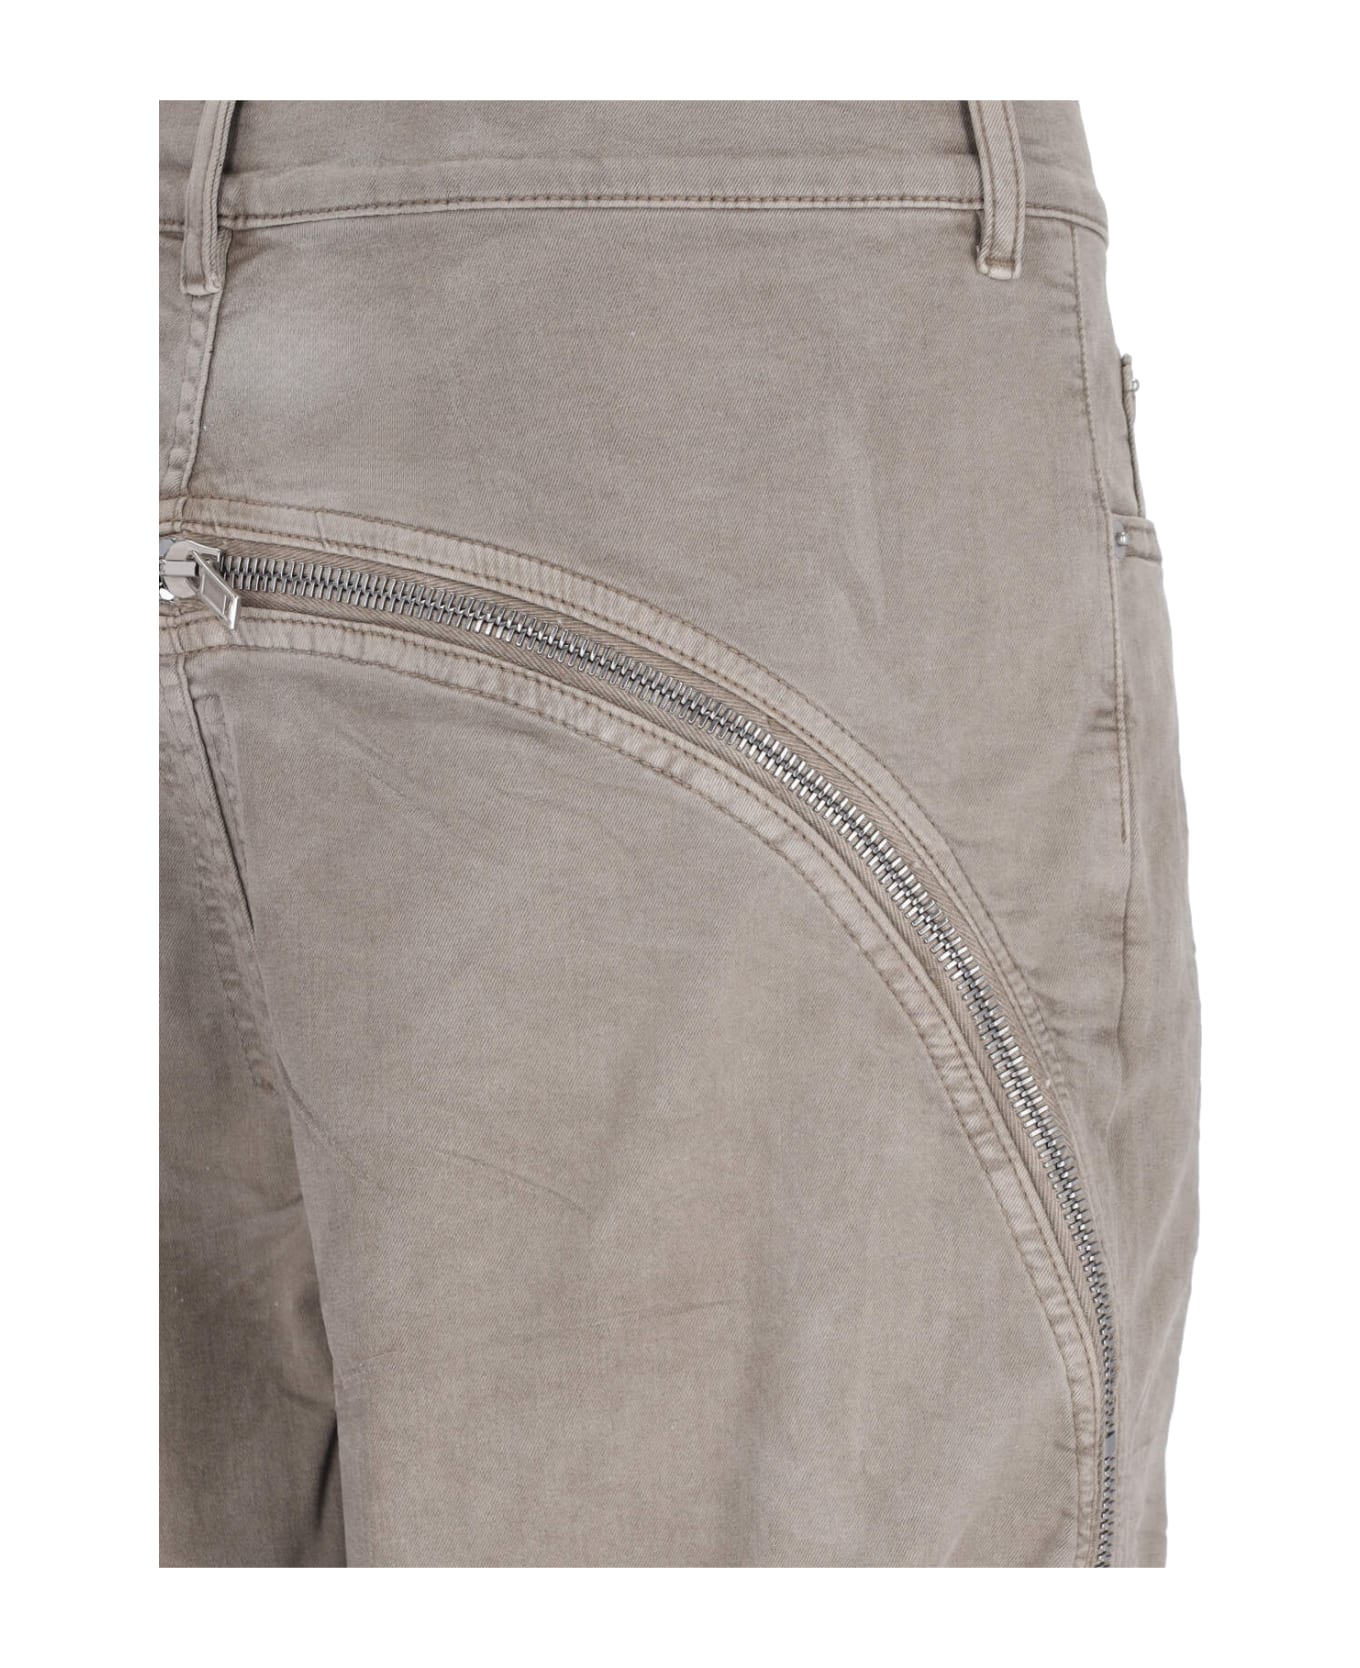 DRKSHDW Jeans - Beige